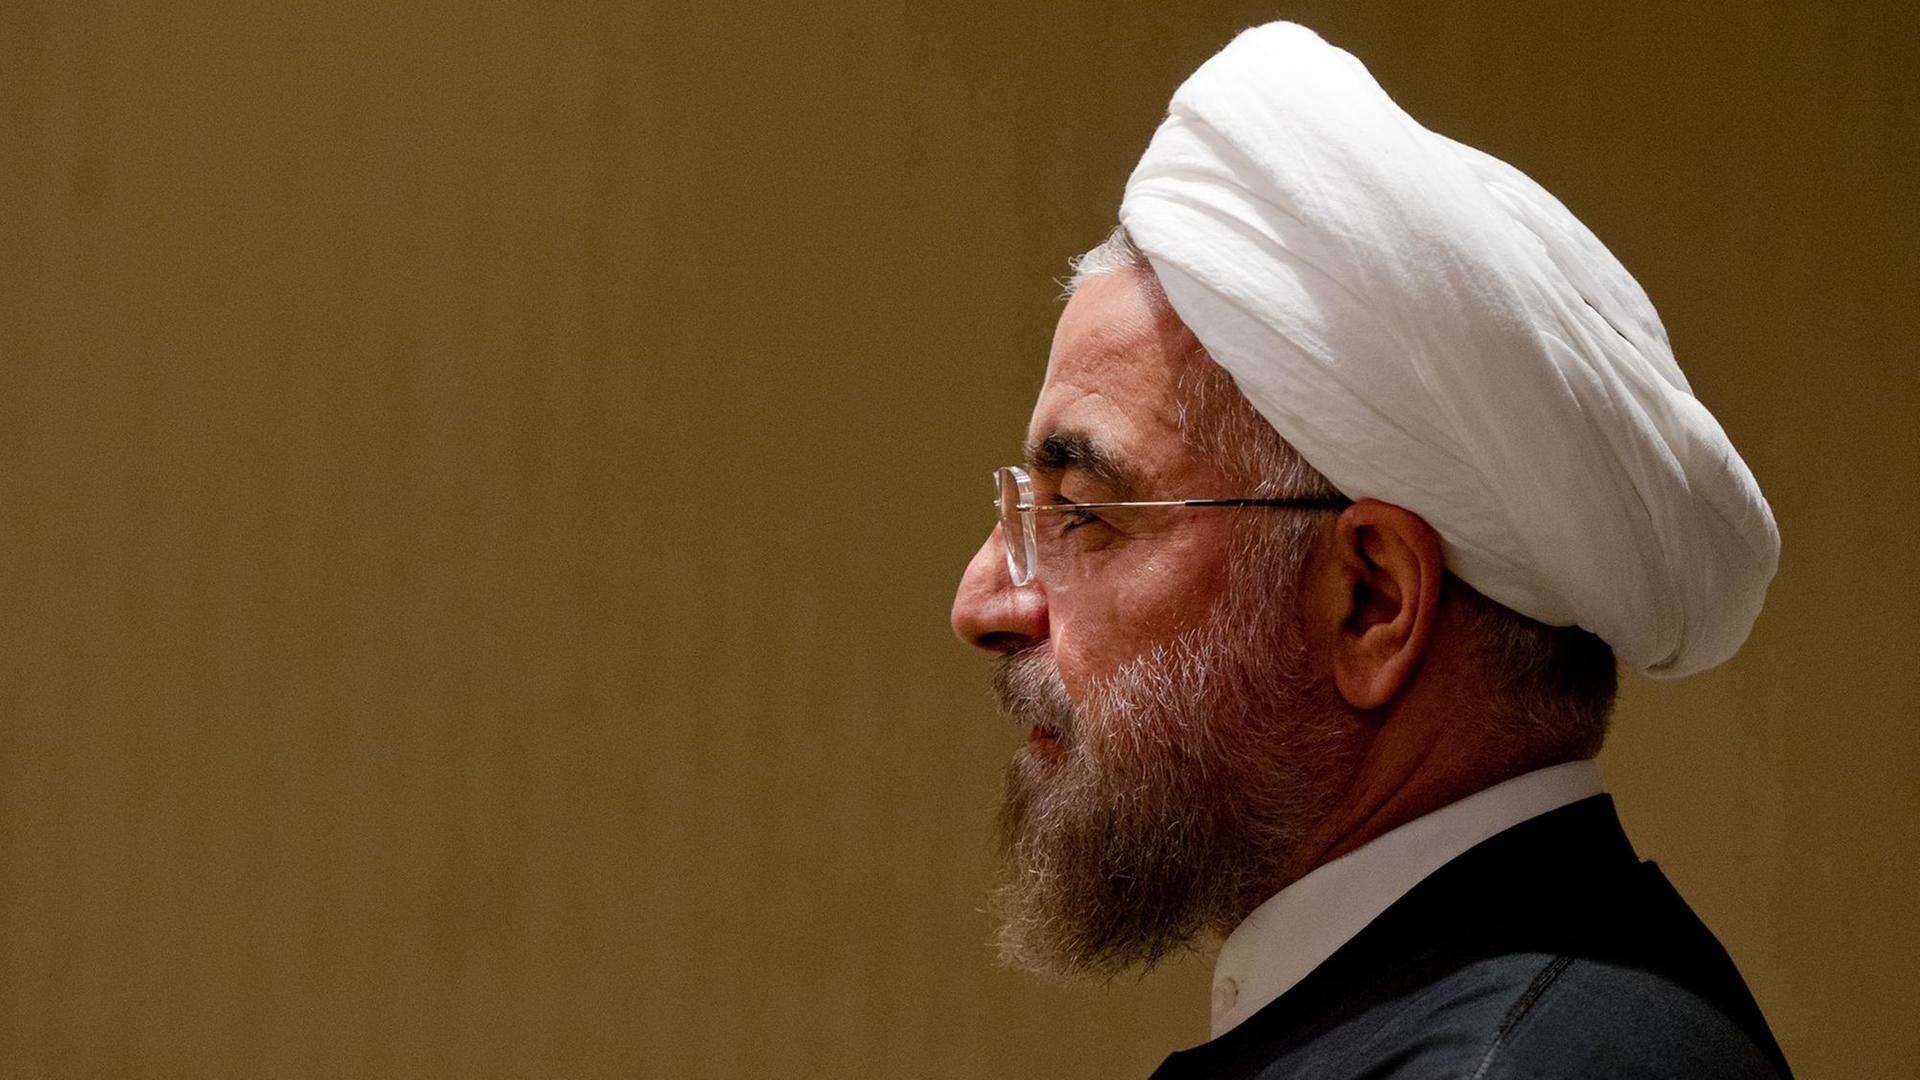 Der Präsident des Iran, Hassan Ruhani, wartet am 25.09.2014 in New York (USA) am Rande der UN-Generalversammlung auf ein Gespräch mit dem deutschen Bundesaußenminister Steinmeier (SPD).